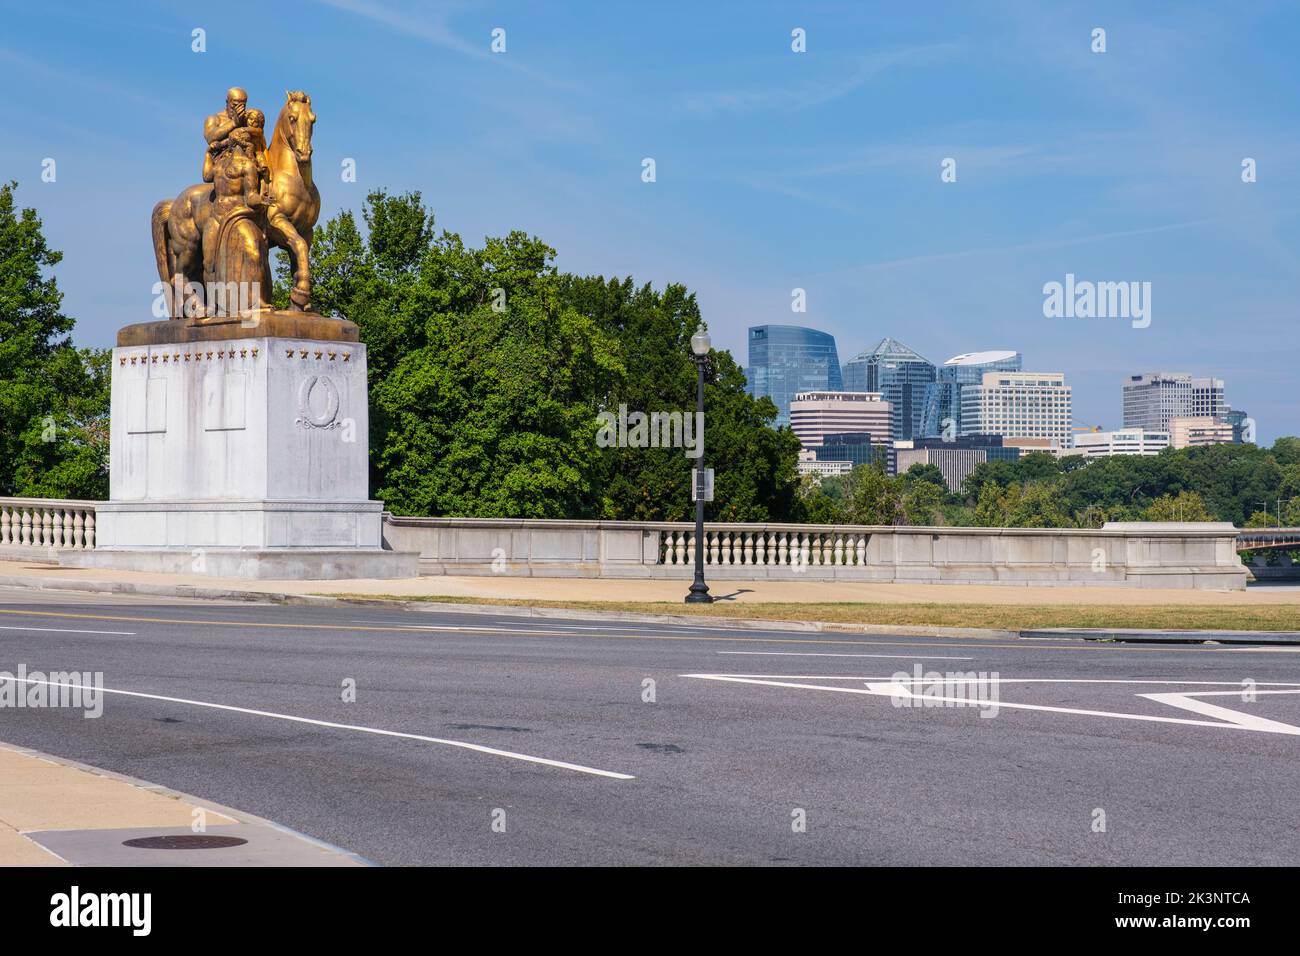 Sacrifice, l'une des statues de l'art de la guerre à l'extrémité est du pont commémoratif d'Arlington. Sculpteur, Leo Friedlander. Washington, DC, États-Unis. Rosslyn Banque D'Images